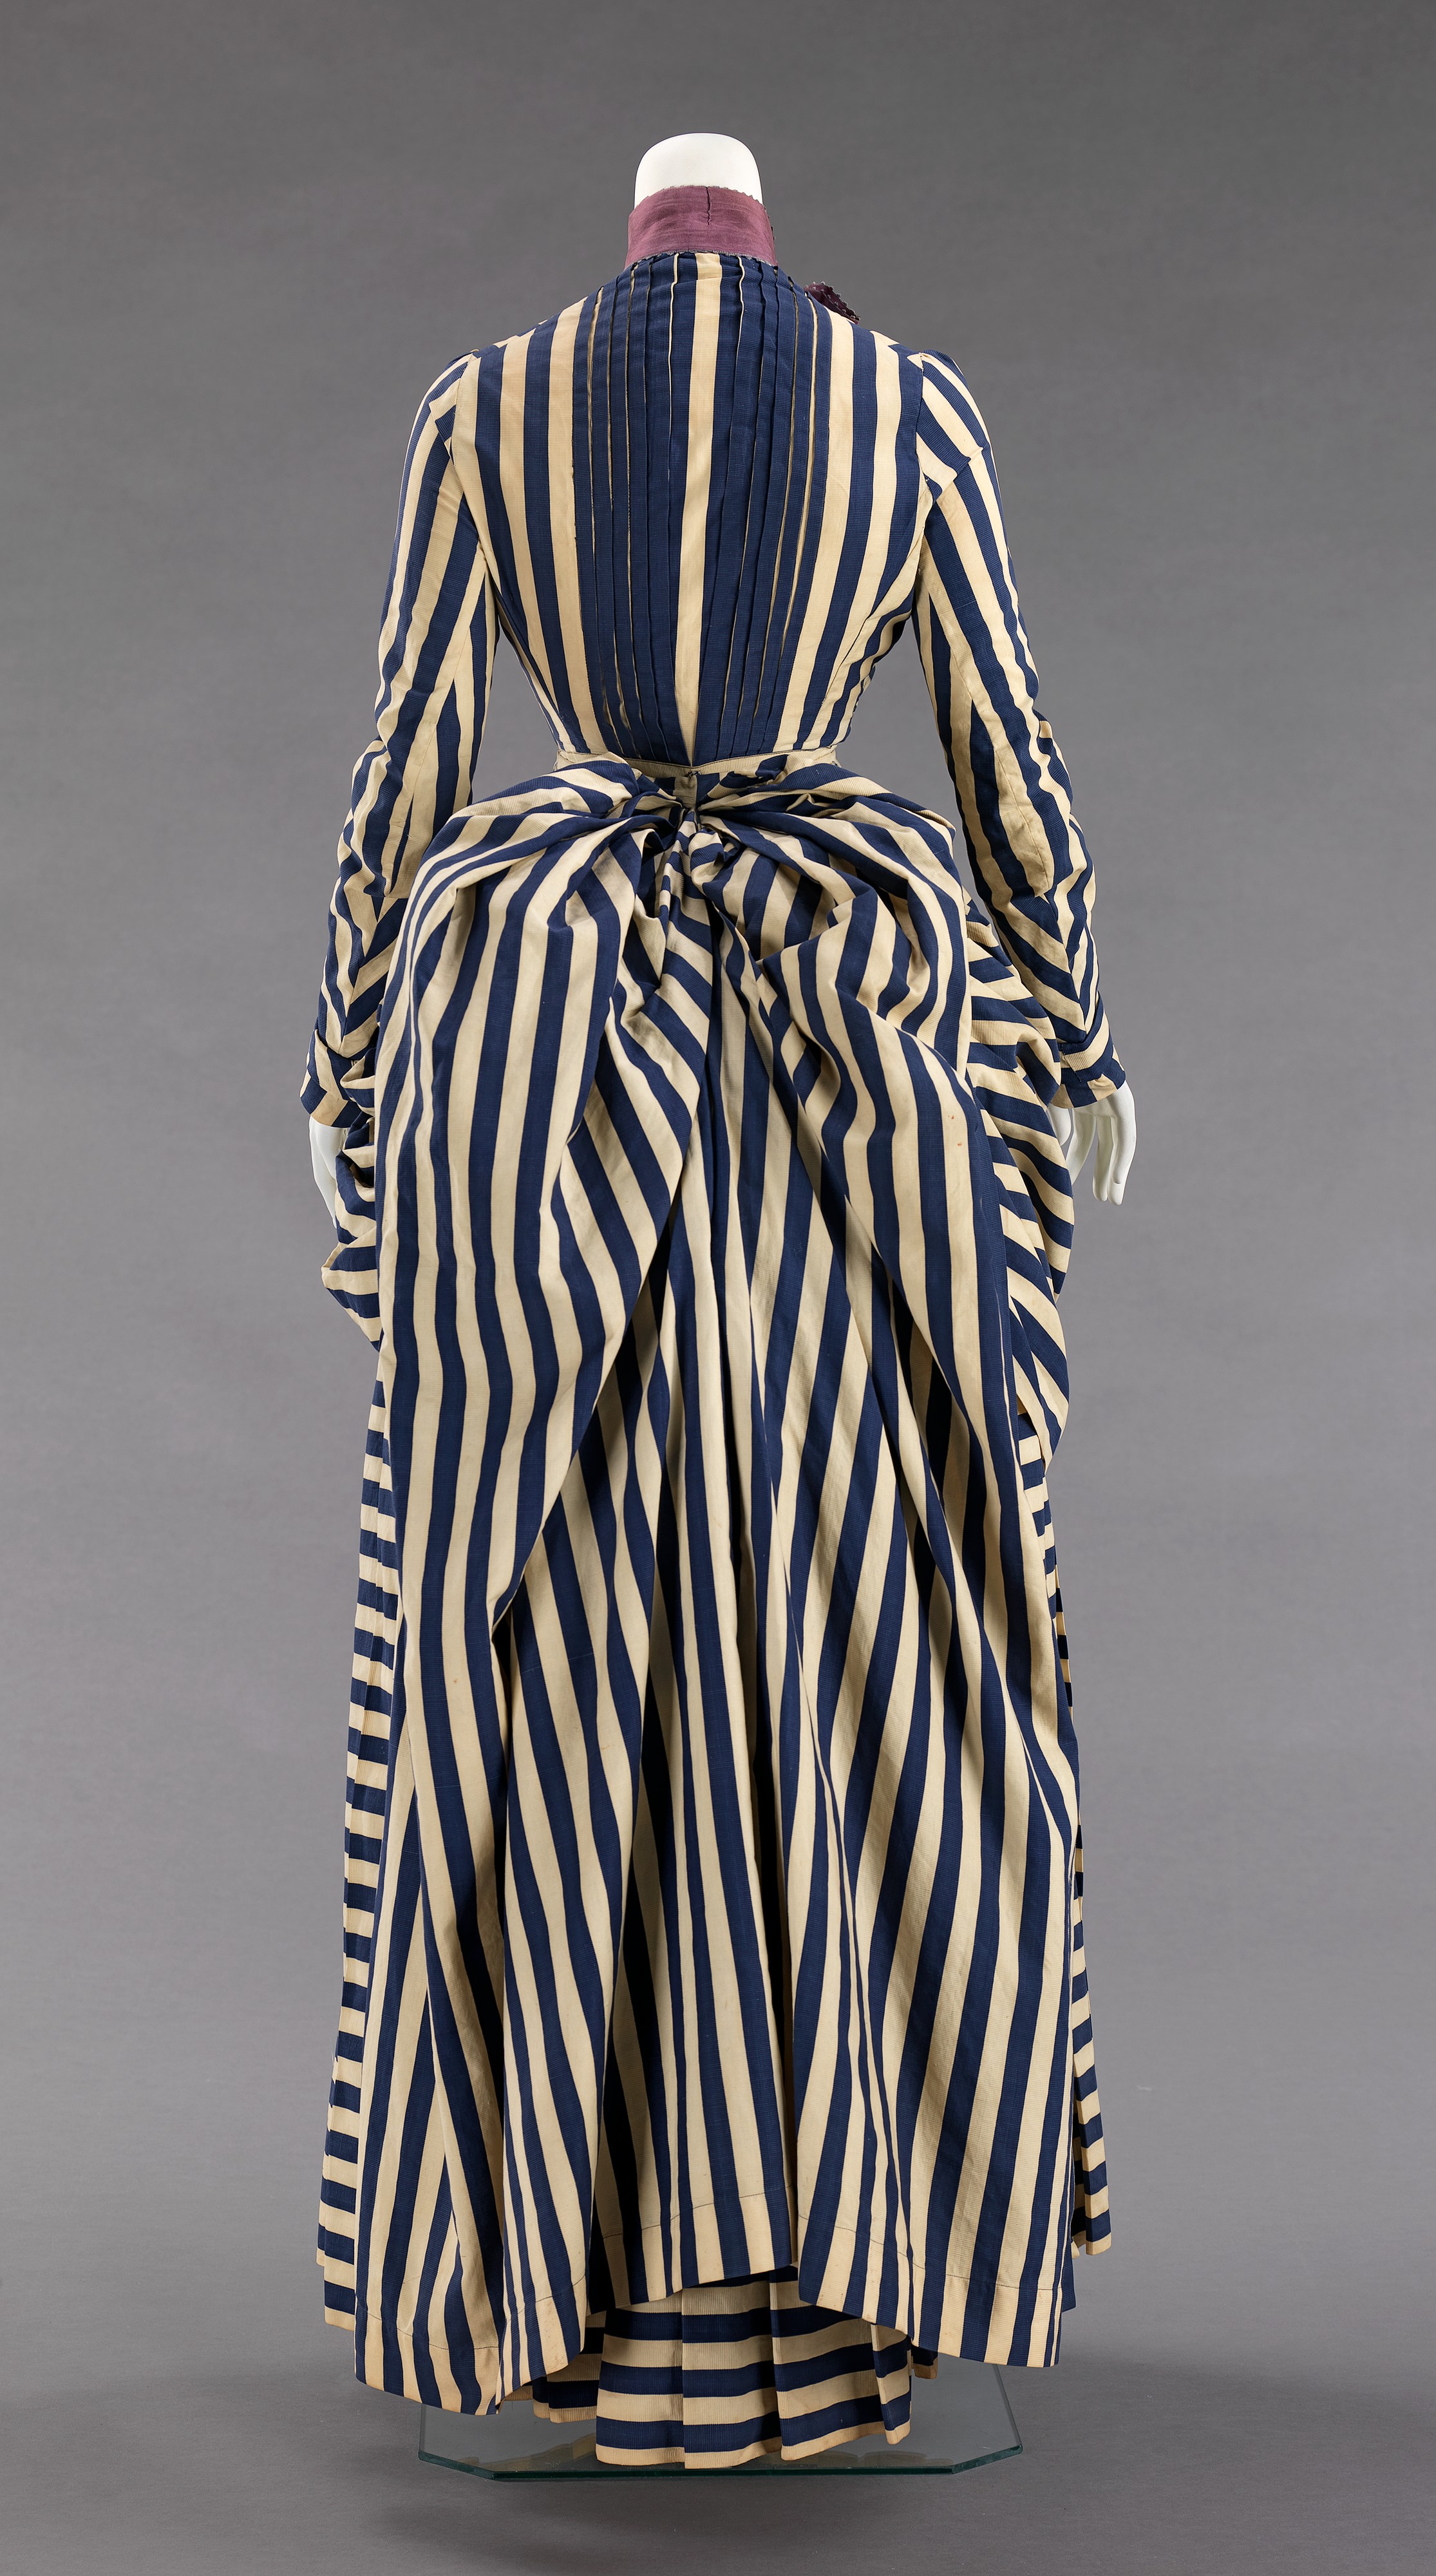 Dress | American | The Metropolitan Museum of Art